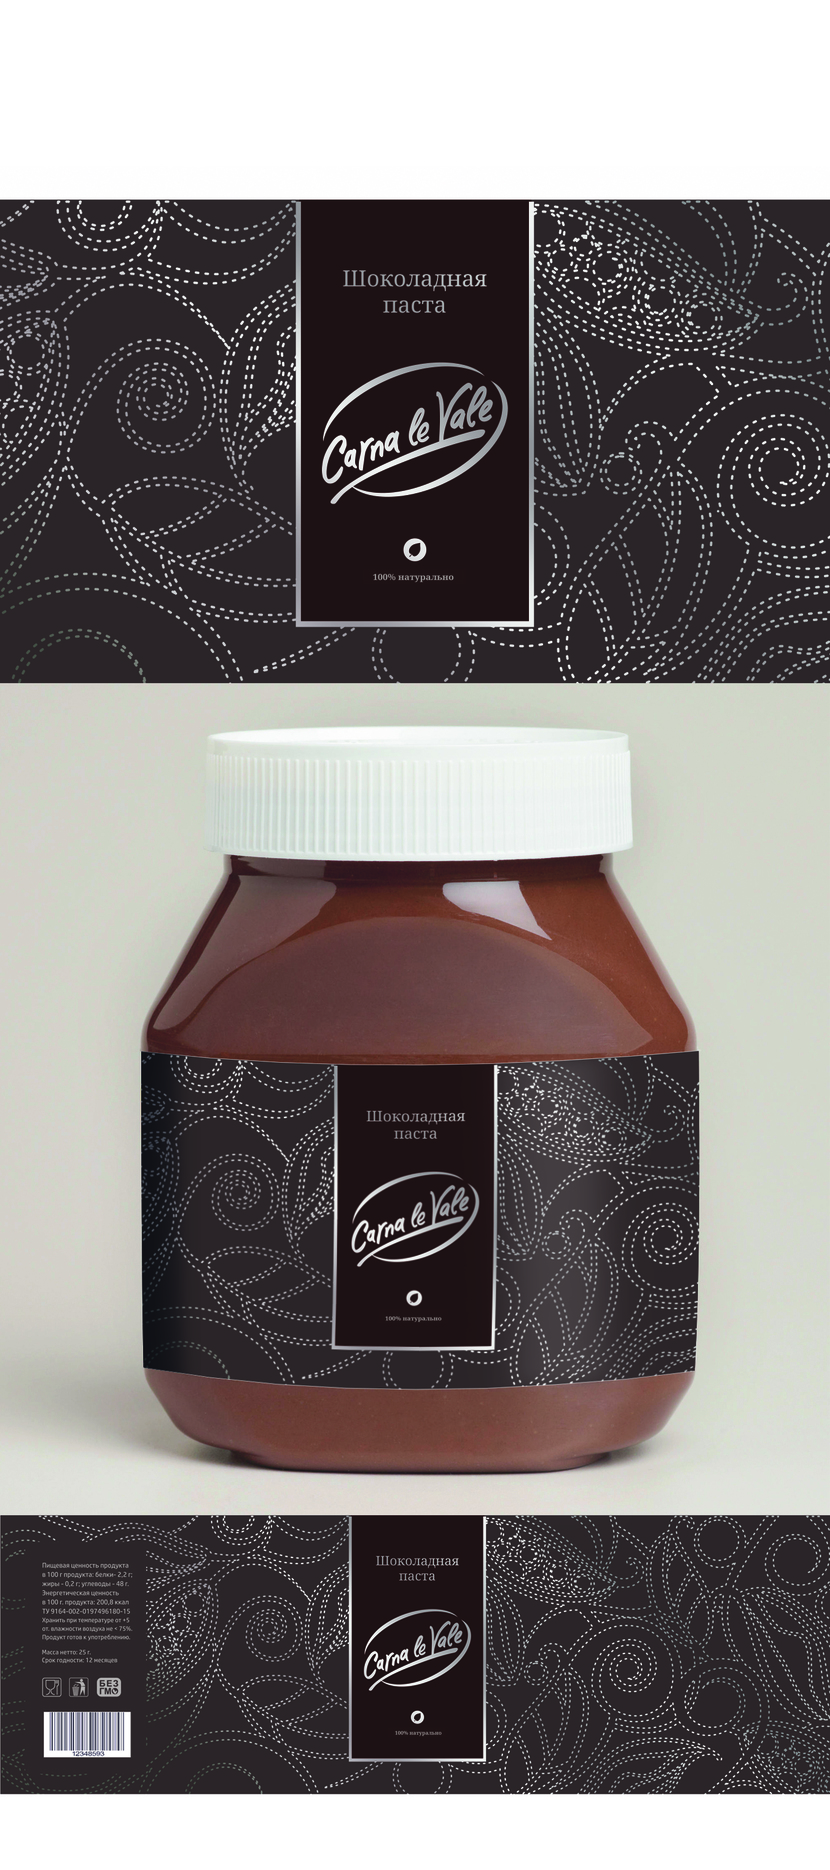 Разработка дизайна этикетки для упаковки шоколадной пасты  -  автор Ирина Васильева